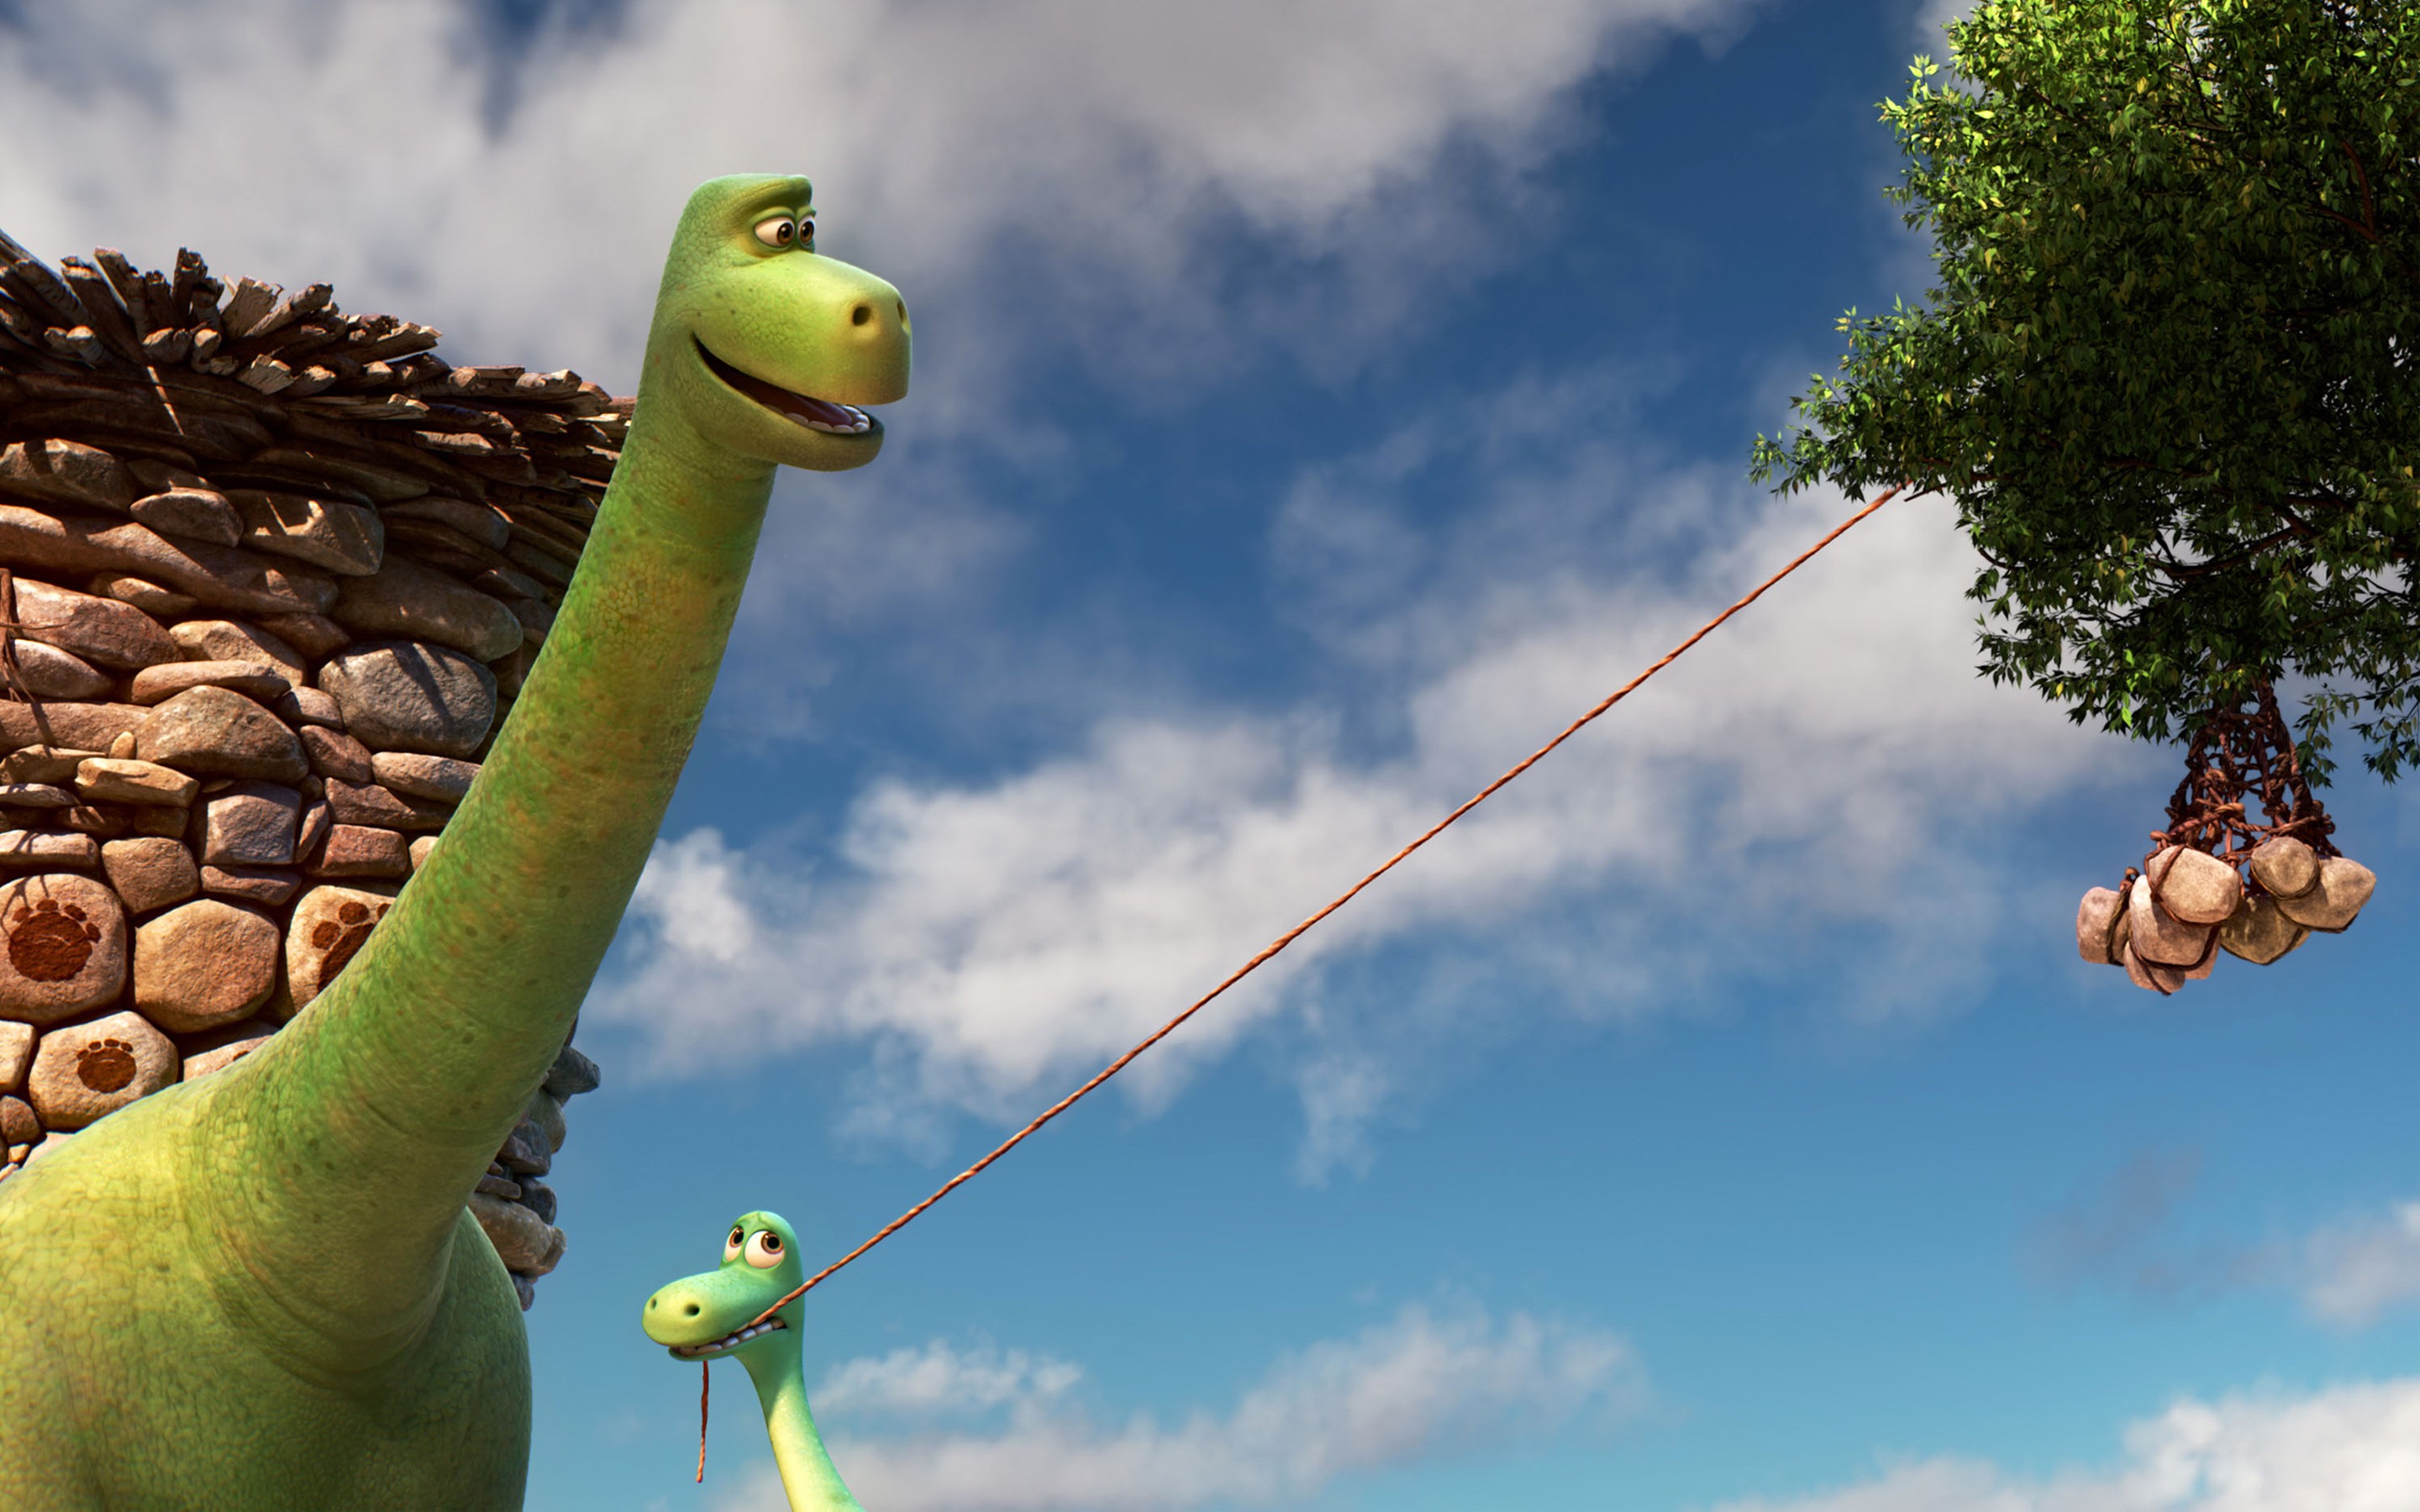 Movies Animated Movies The Good Dinosaur 2015 Year 2880x1800